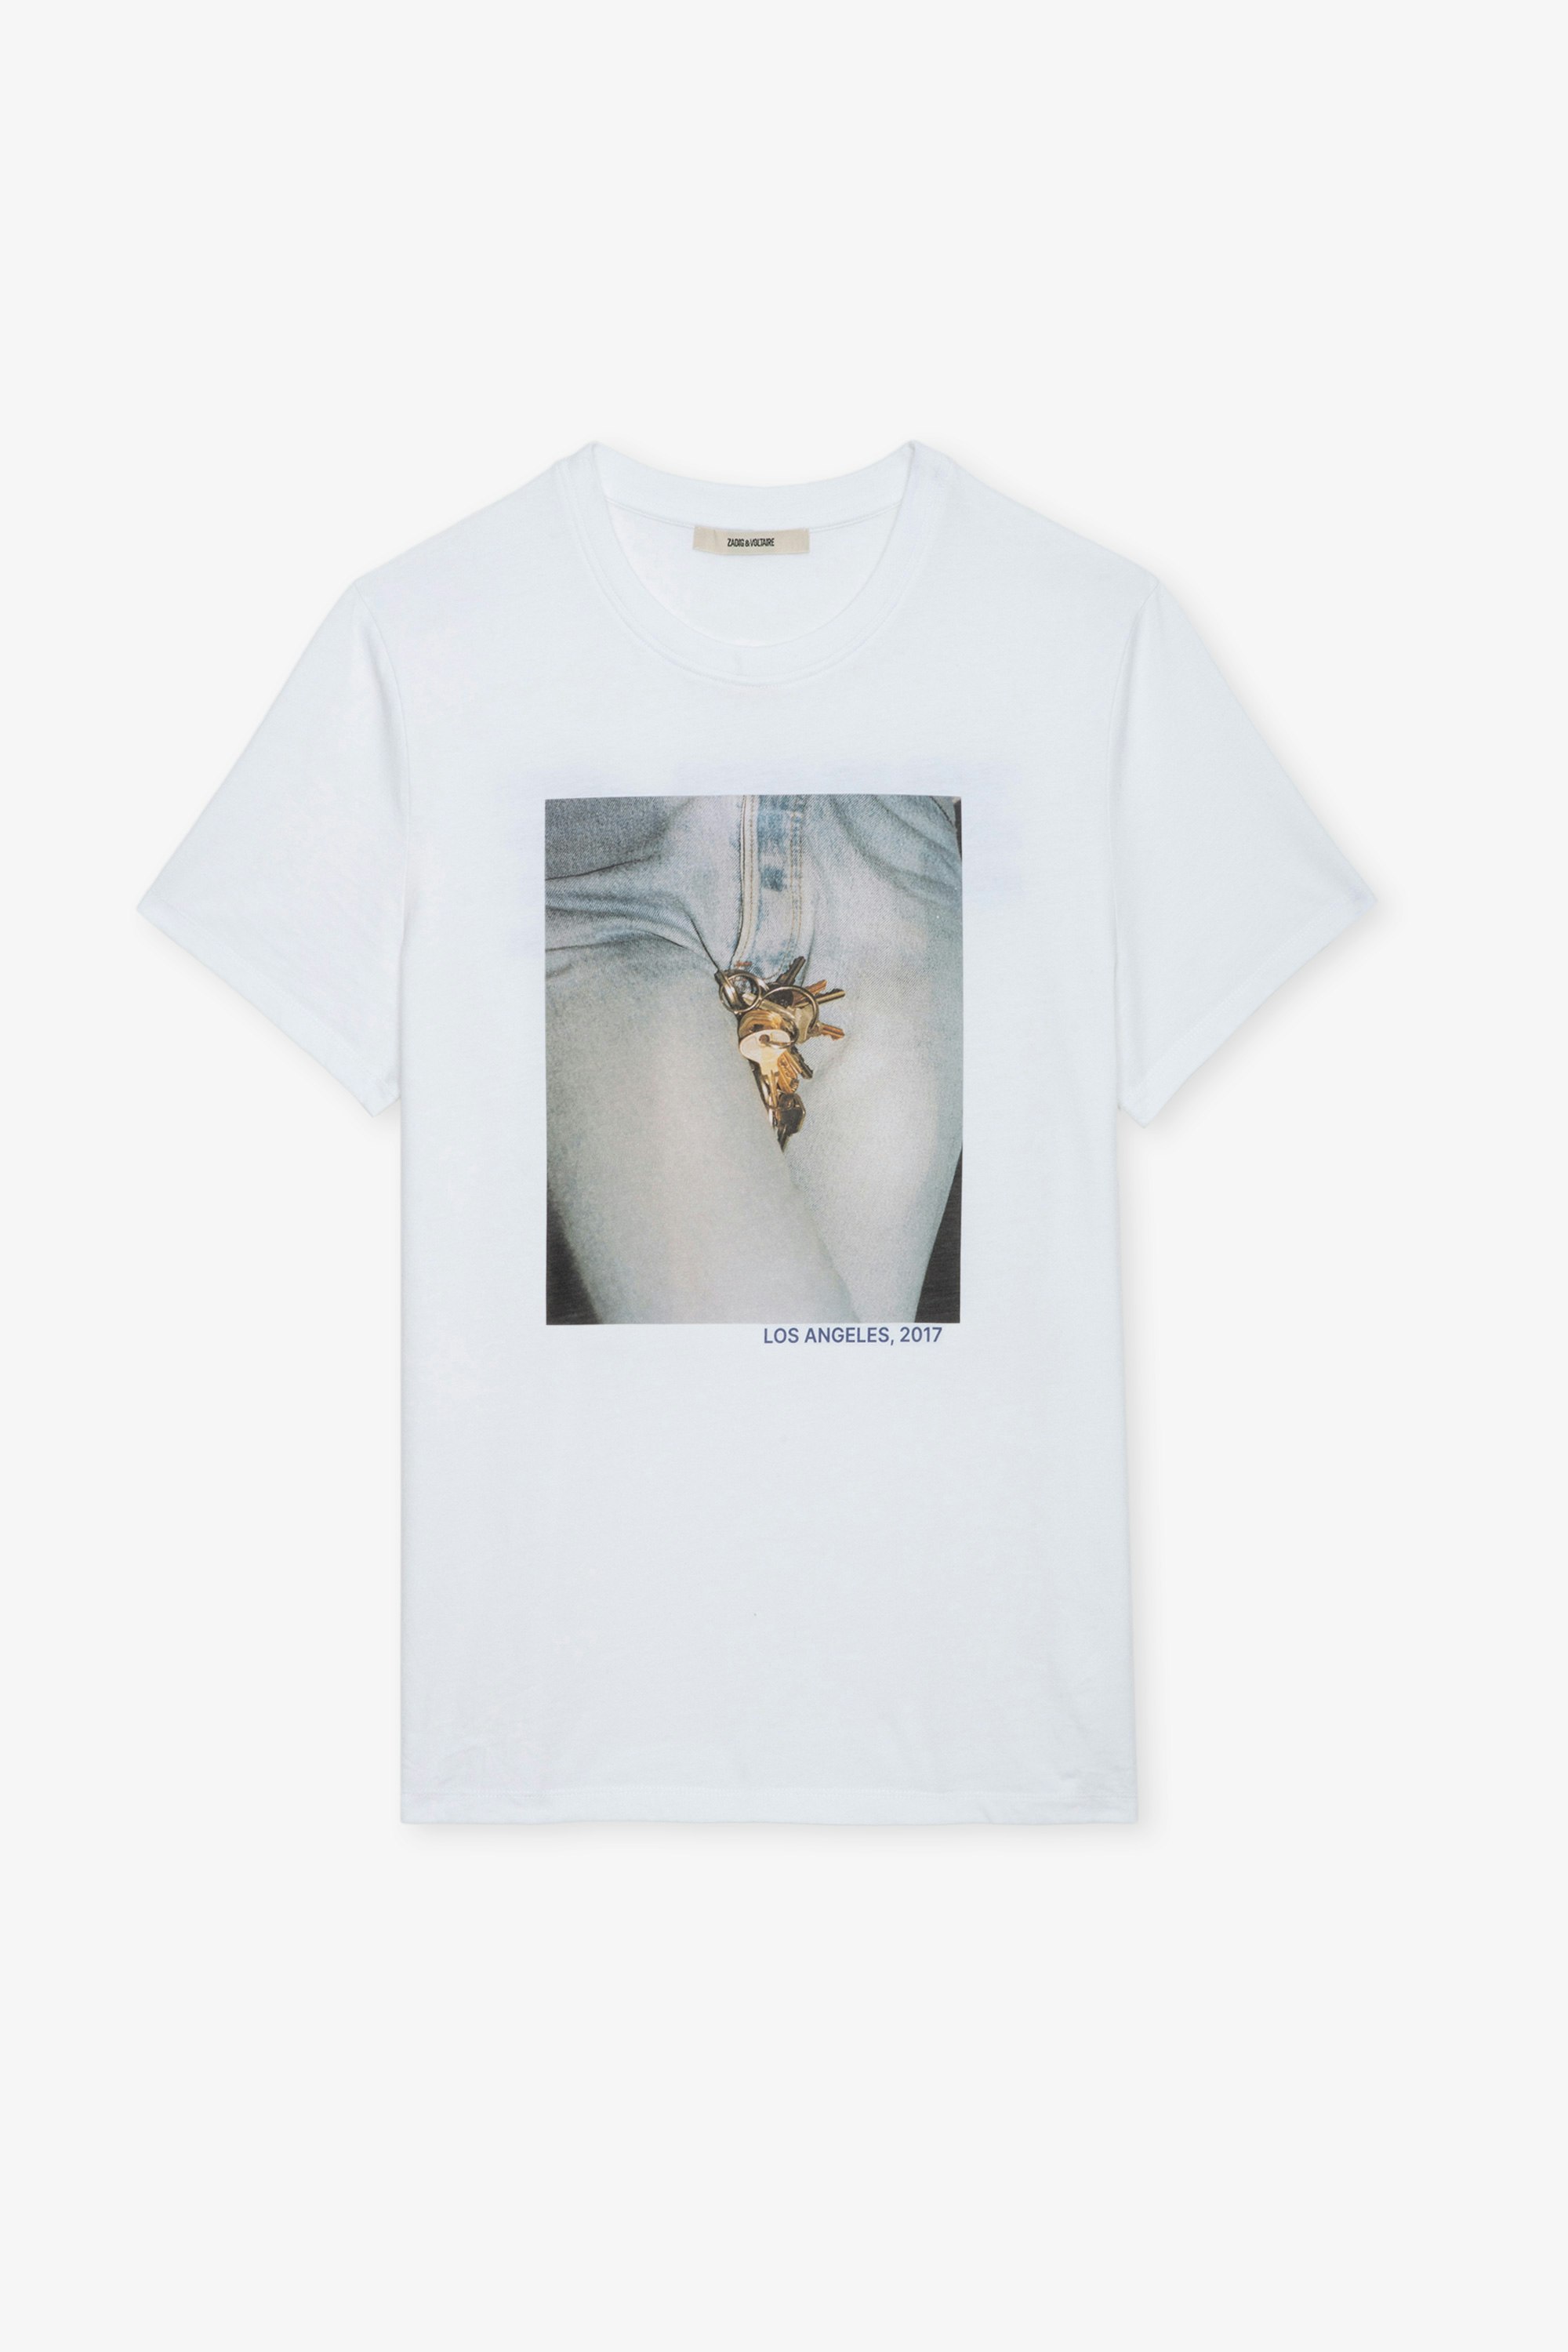 T-shirt Tommy Photoprint - T-shirt en coton blanc à manches courtes, photoprint à l'avant et message au dos.